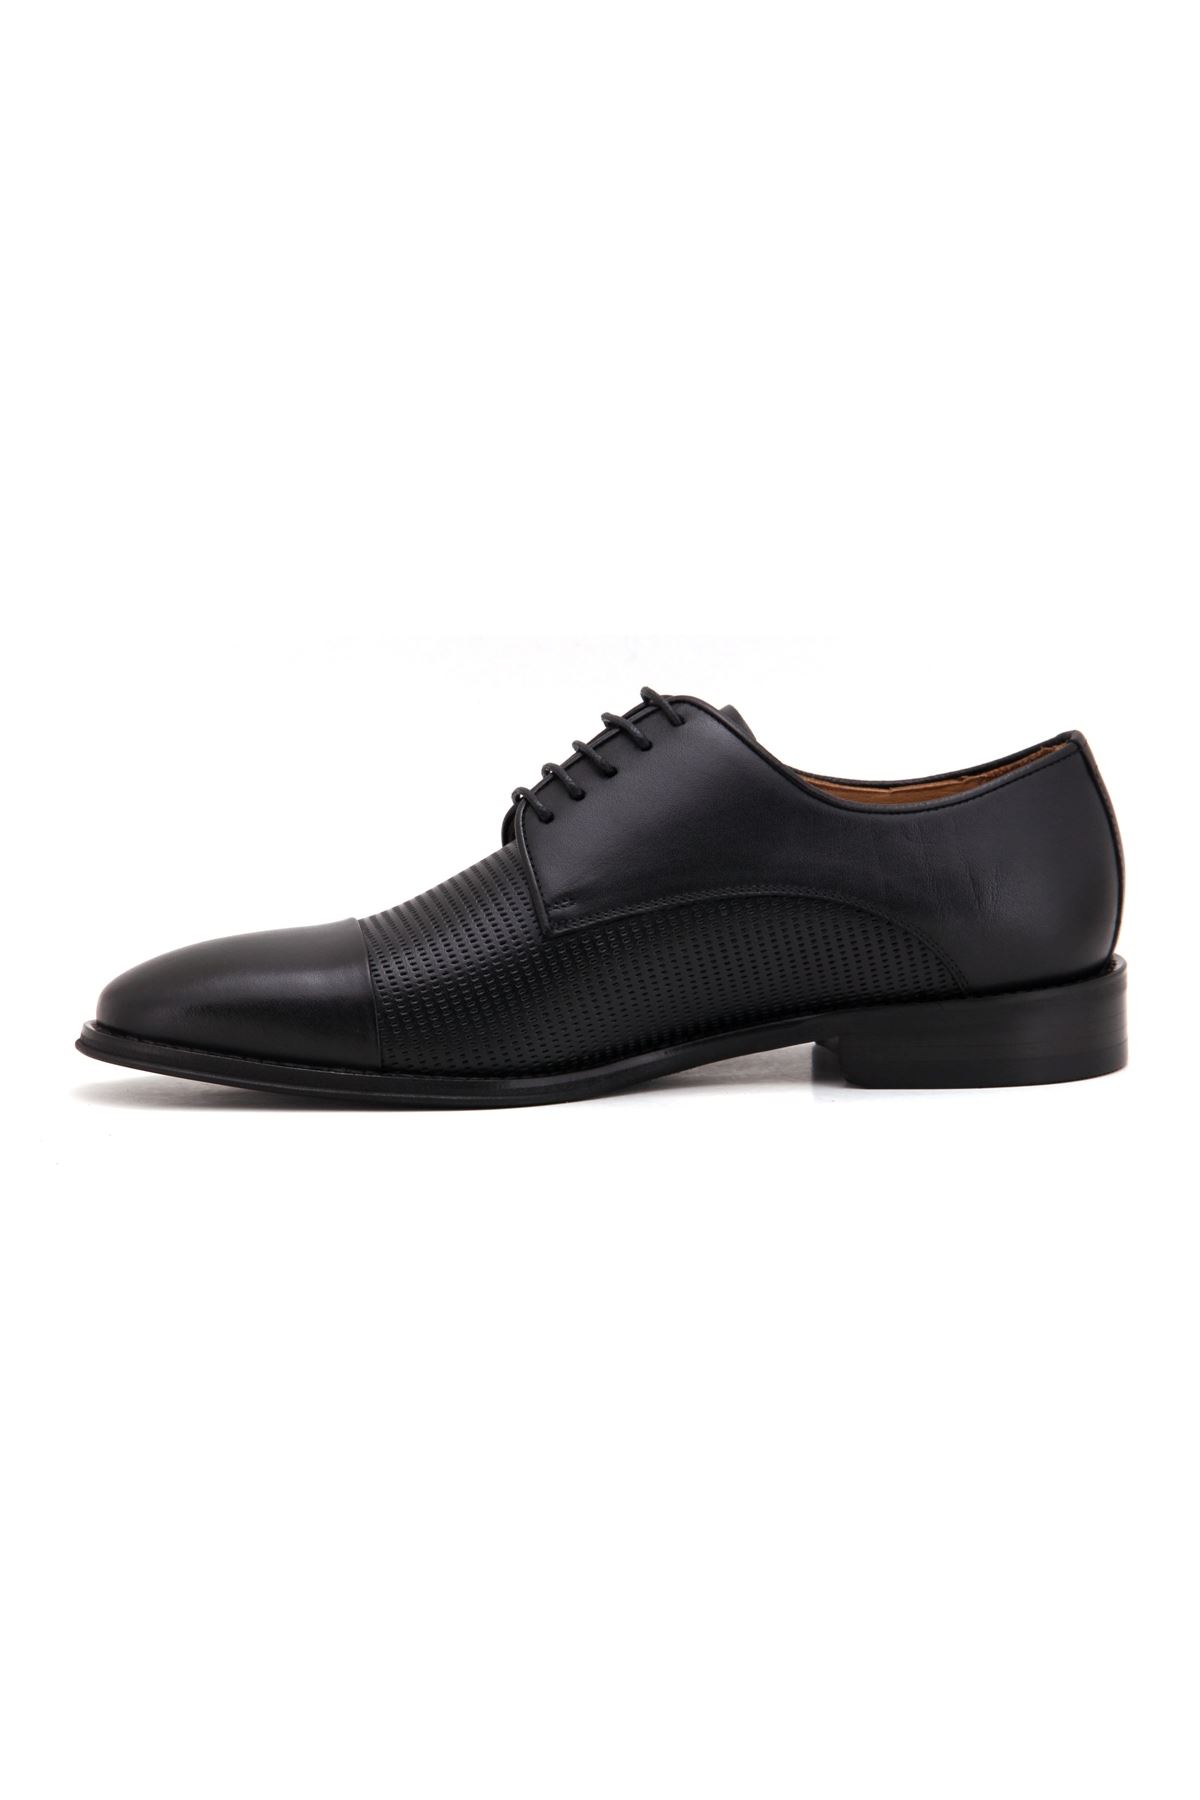 3271 Libero Klasik Erkek Ayakkabı - Siyah